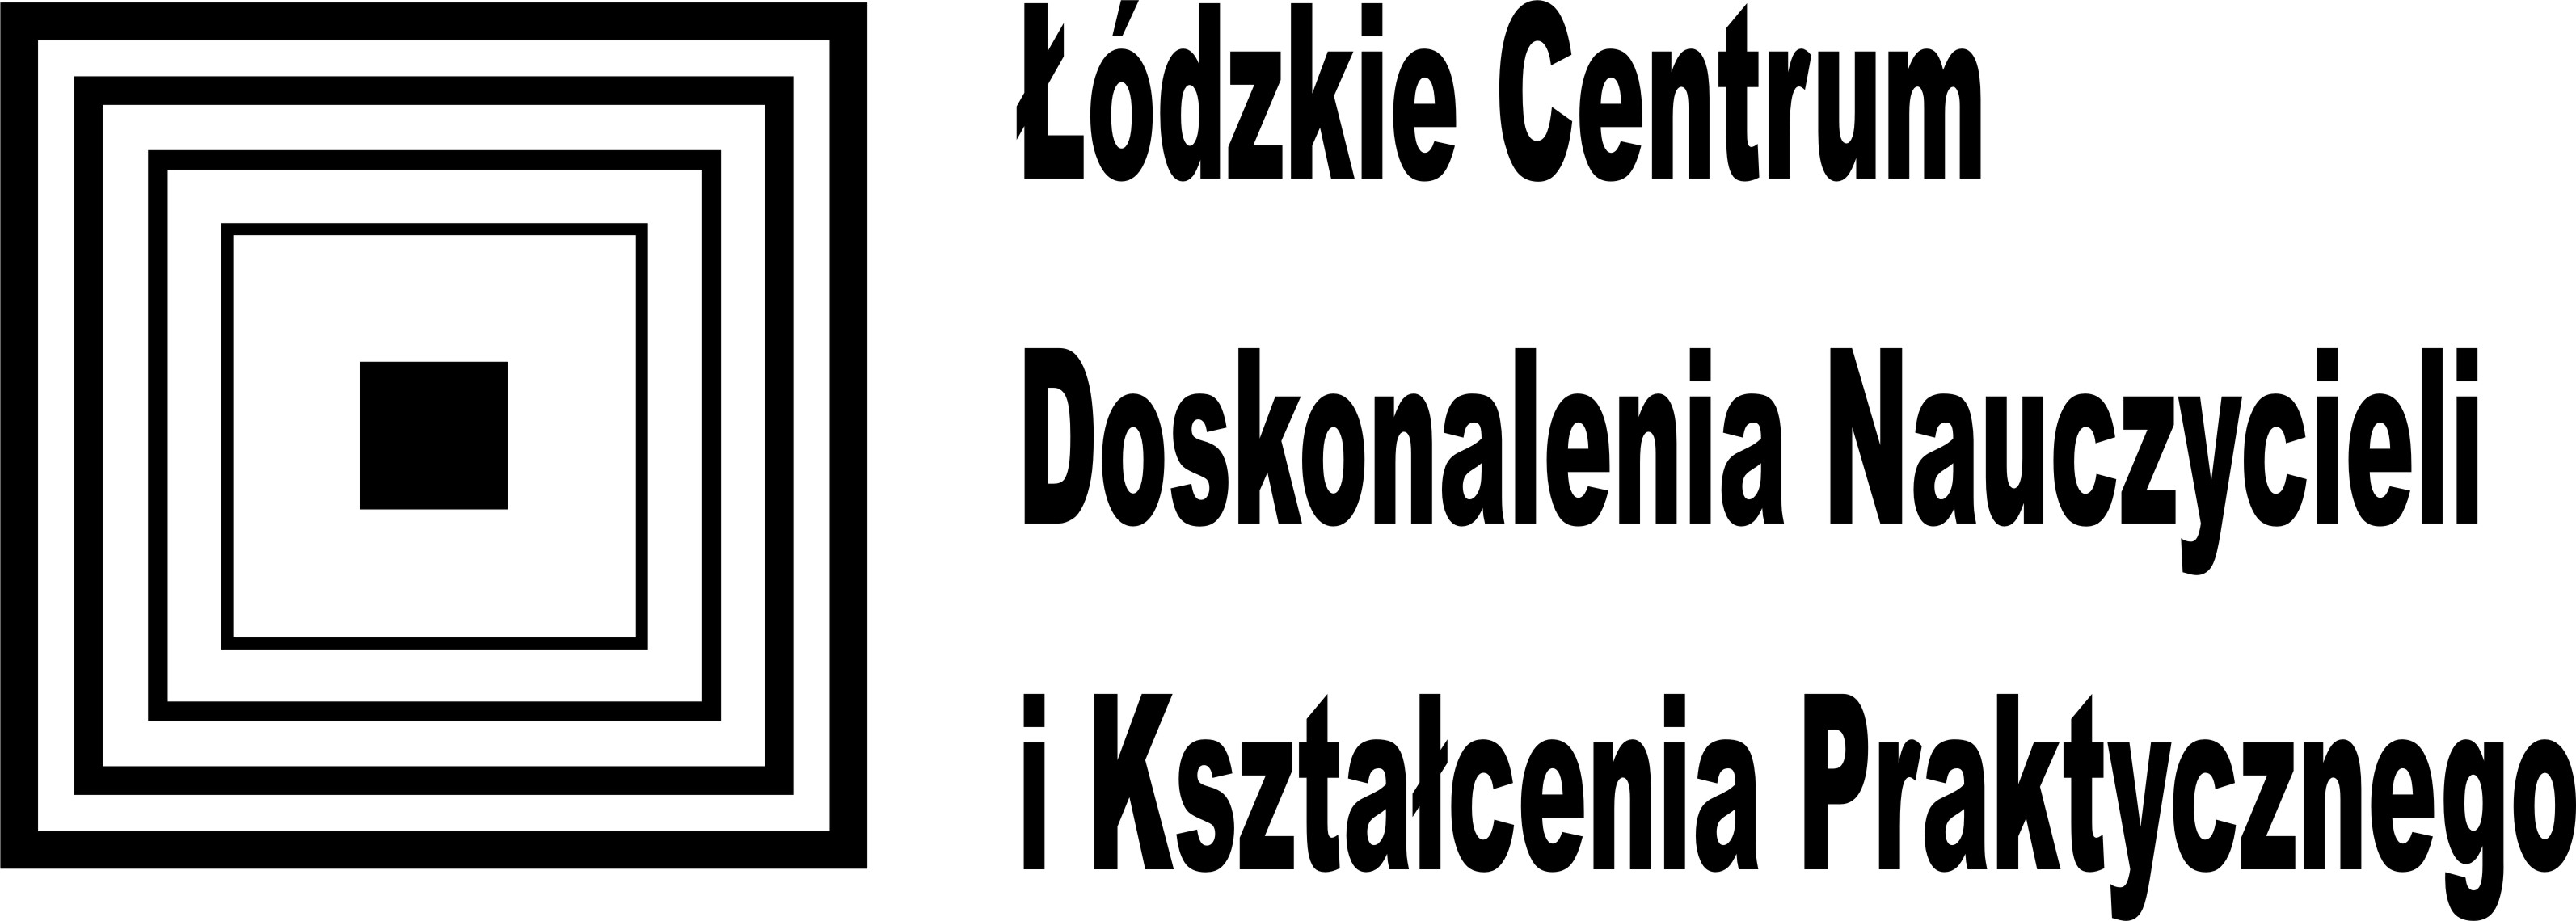 logo Łódzkiego Centrum Doskonalenia Nauczycieli i Kształcenia Praktycznego w Łodzi